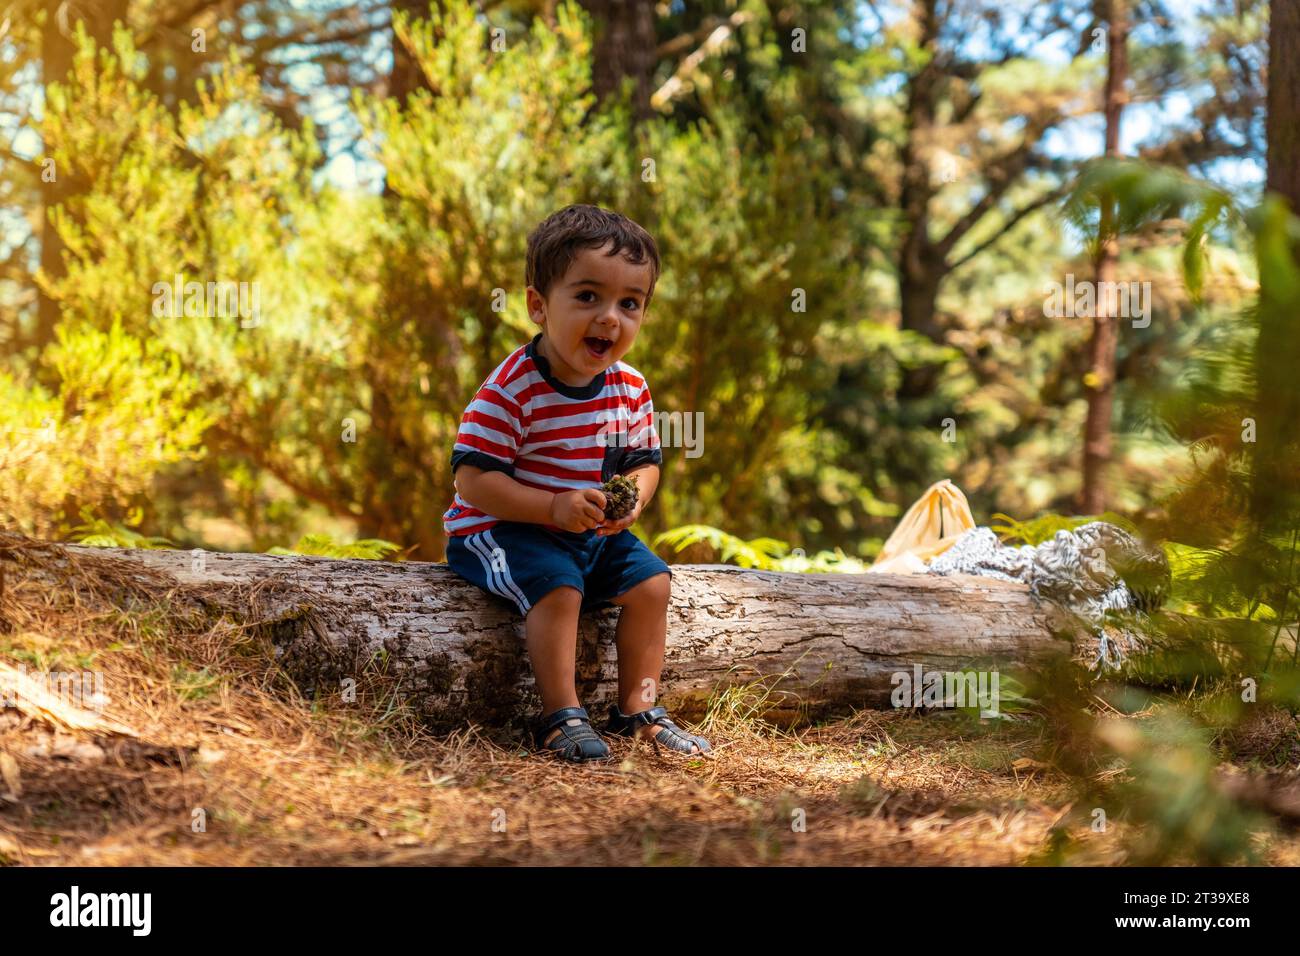 Porträt eines Jungen, der auf einem Baum in der Natur neben Kiefern sitzt und lächelt, Madeira. Portugal Stock Photo